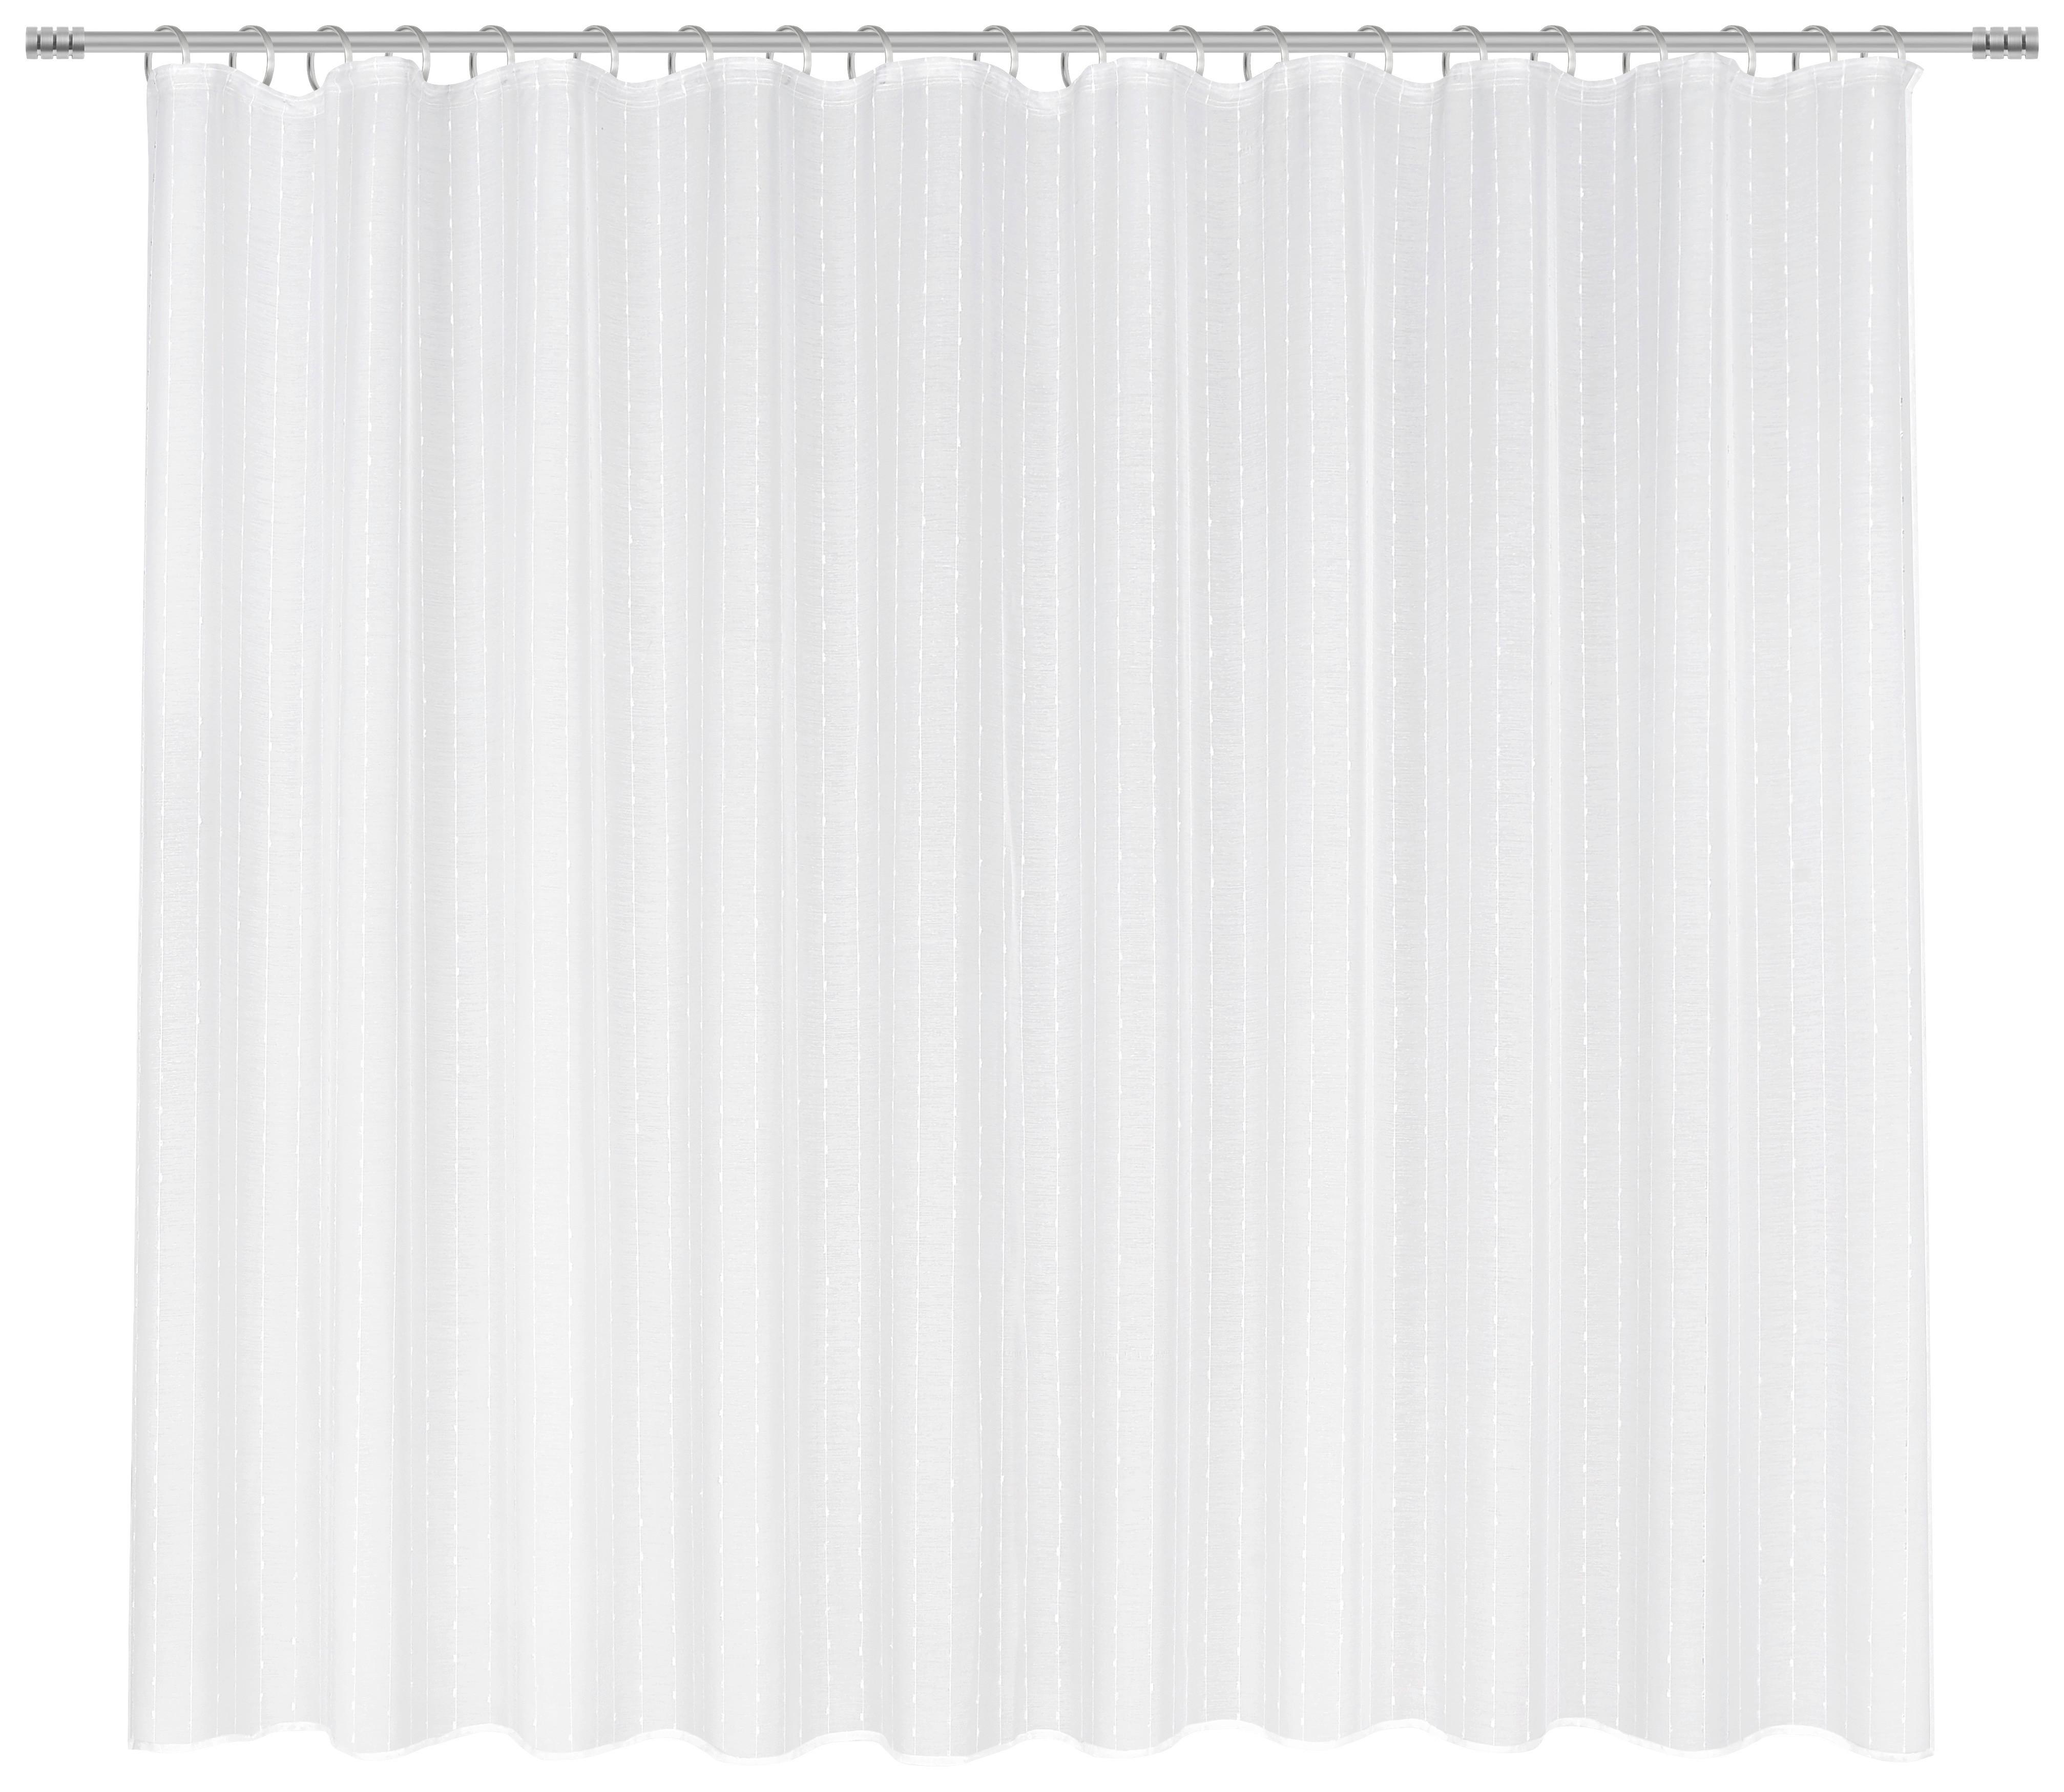 Kusová Záclona Lisa Store 2, 300/175cm - bílá, Romantický / Rustikální, textil (300/175cm) - Modern Living